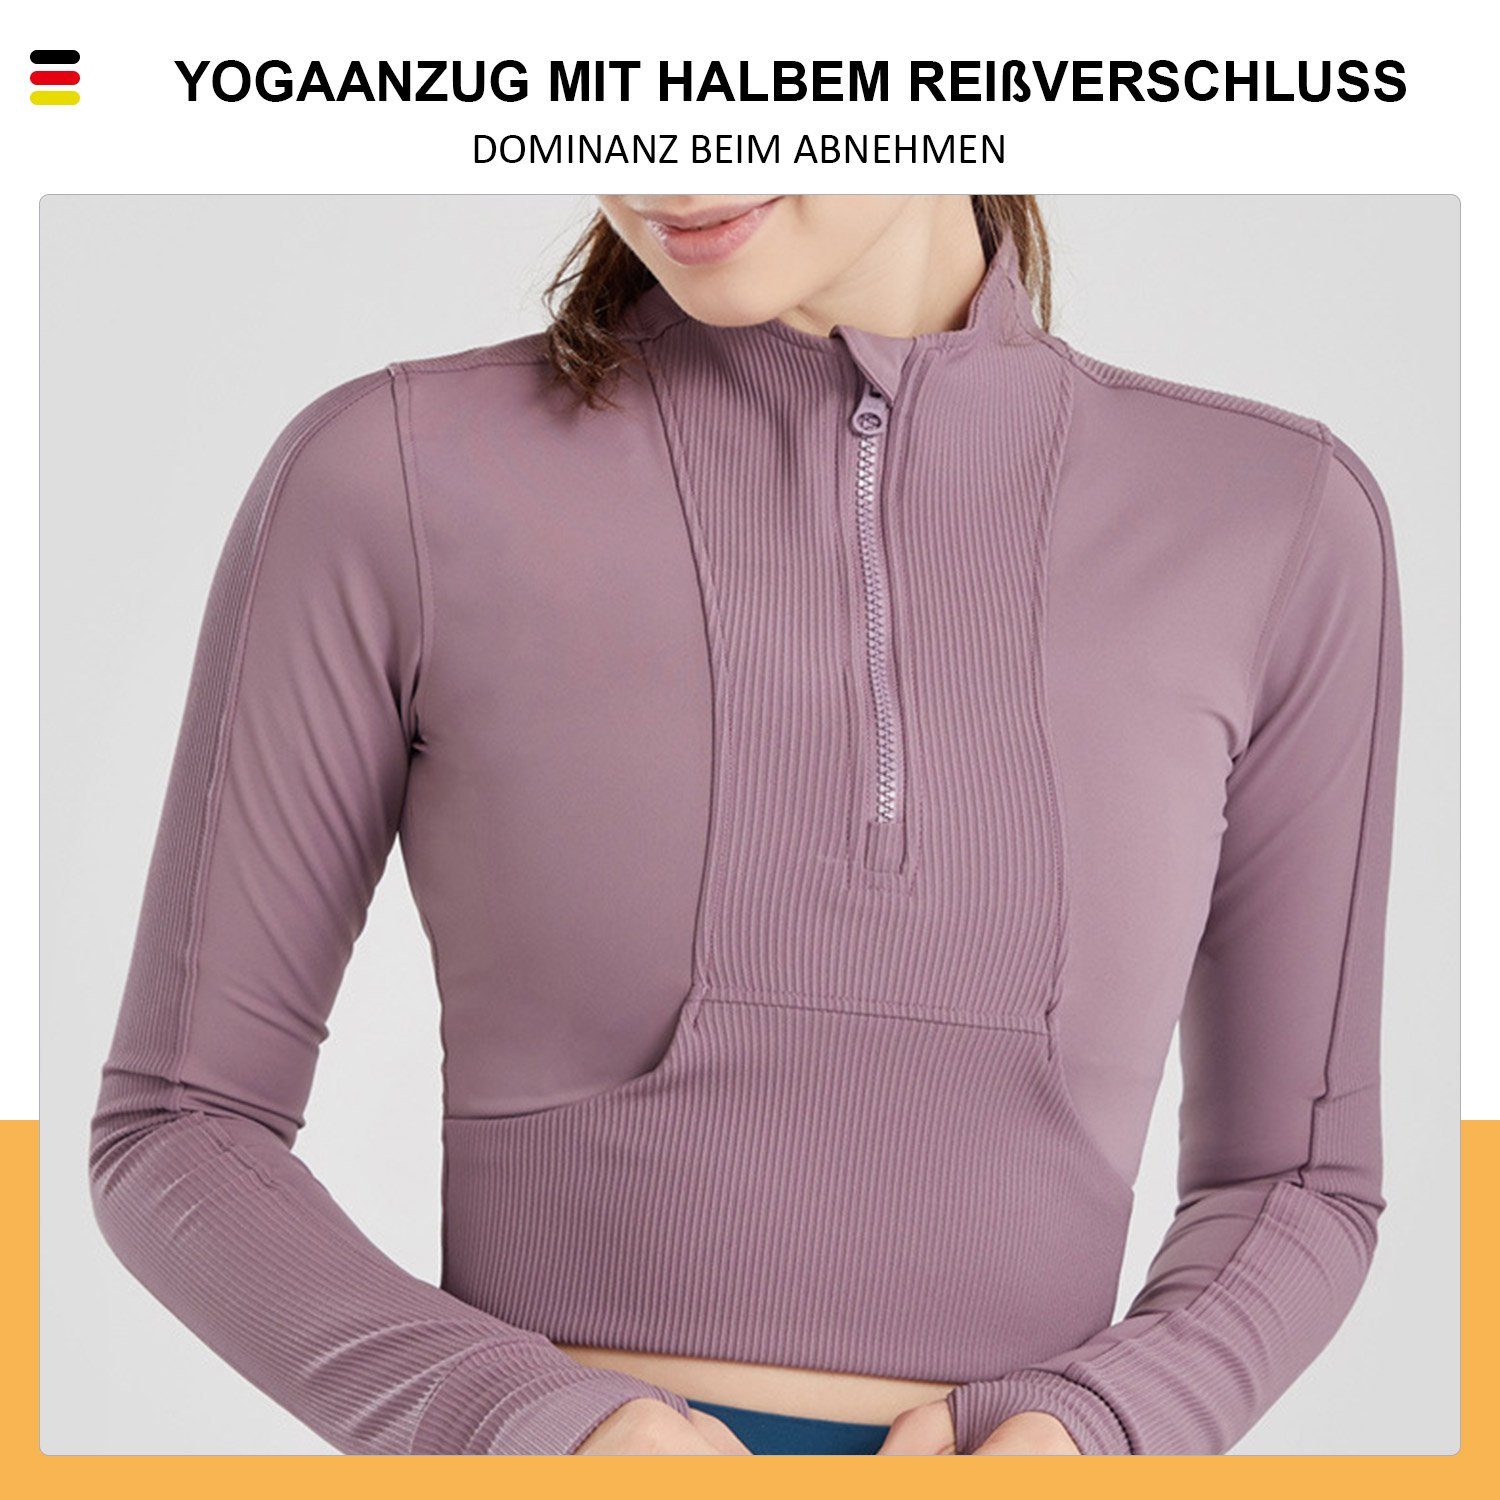 MAGICSHE Funktionsshirt T-Shirt Damen Fitness Reißverschluss Top Design Halber Leicht Sweatshirt Brust Lila